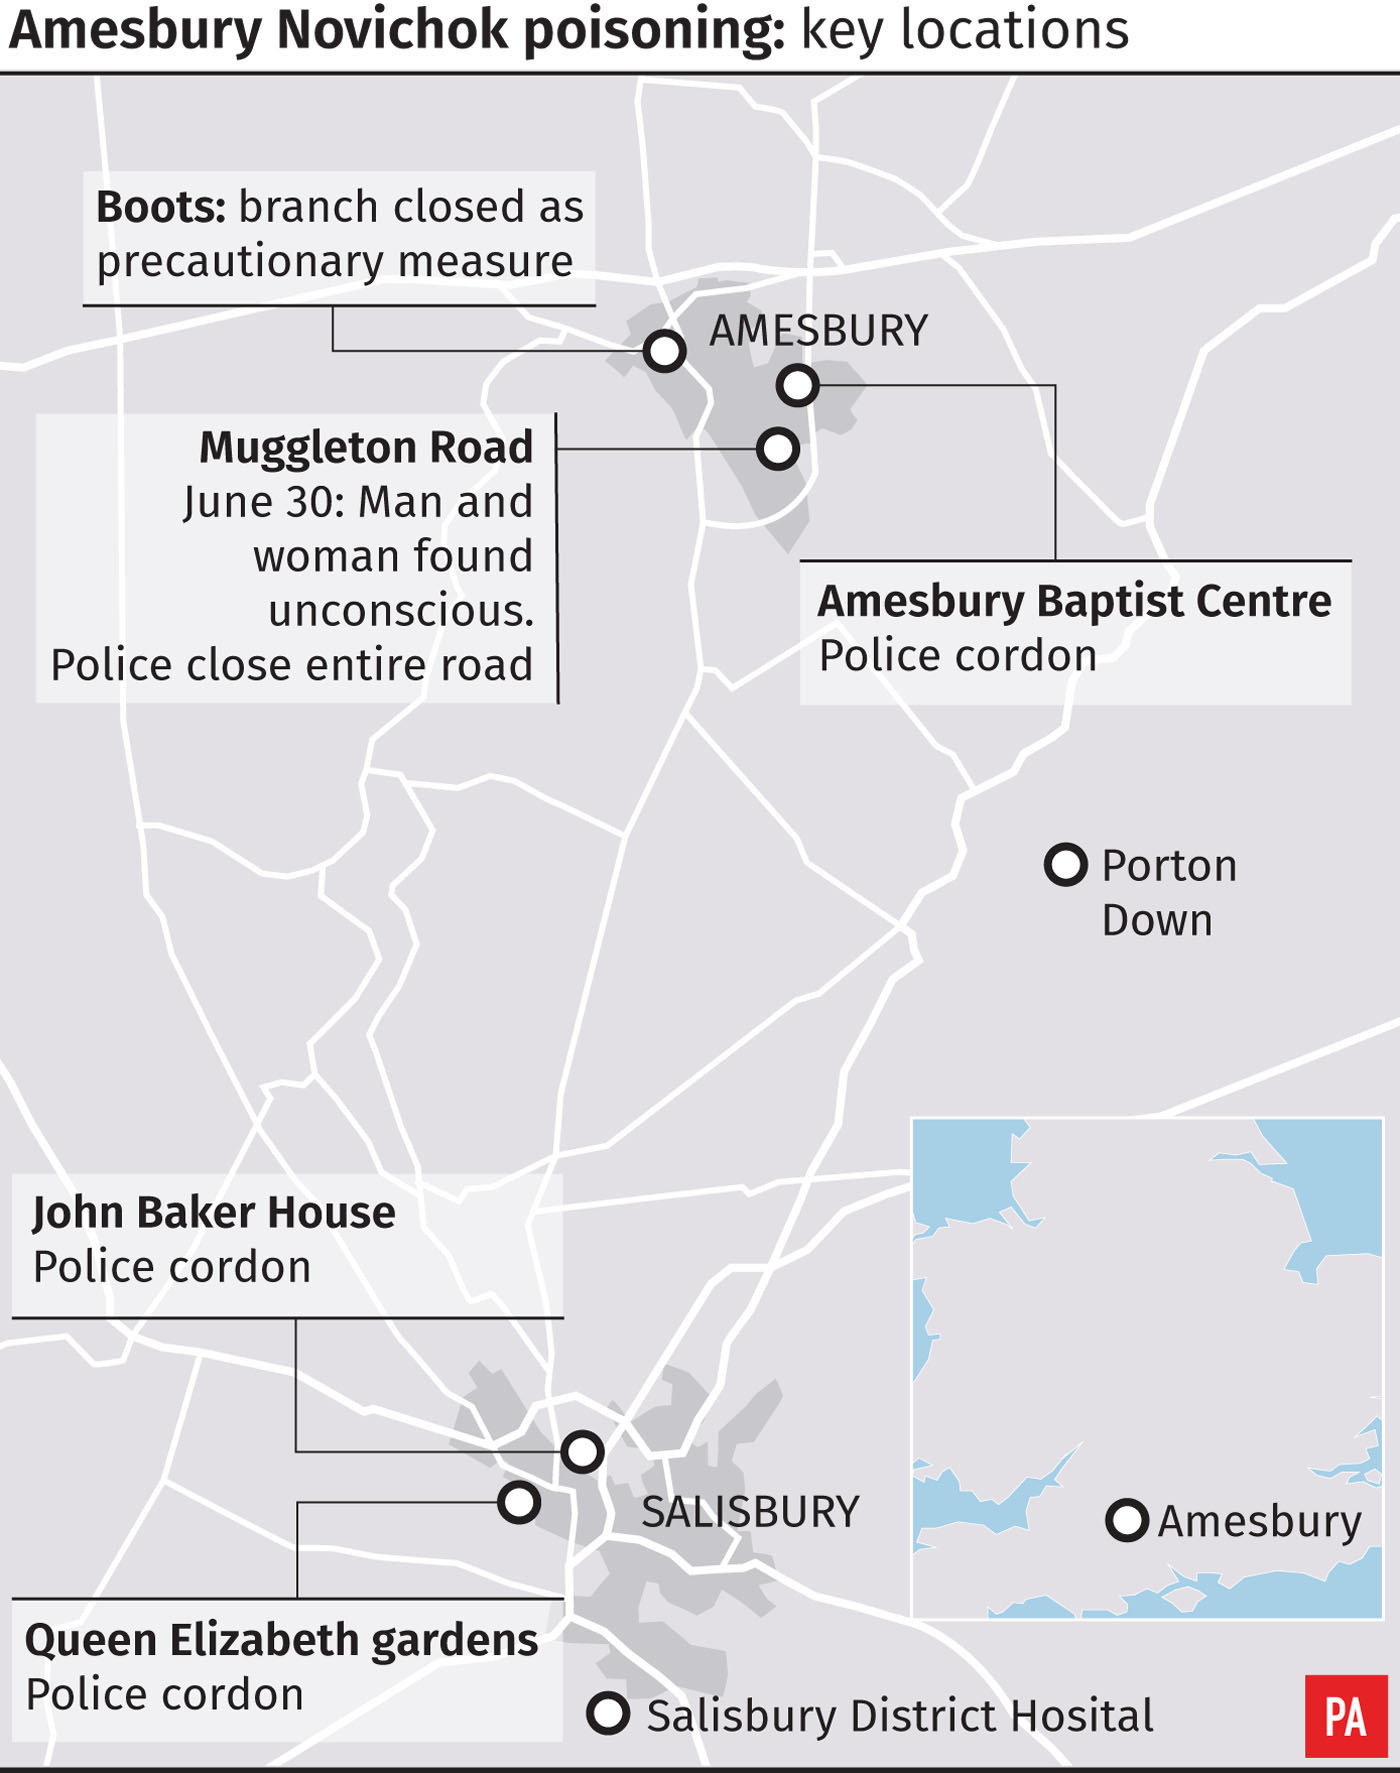 Amesbury Novichok poisoning - key locations 